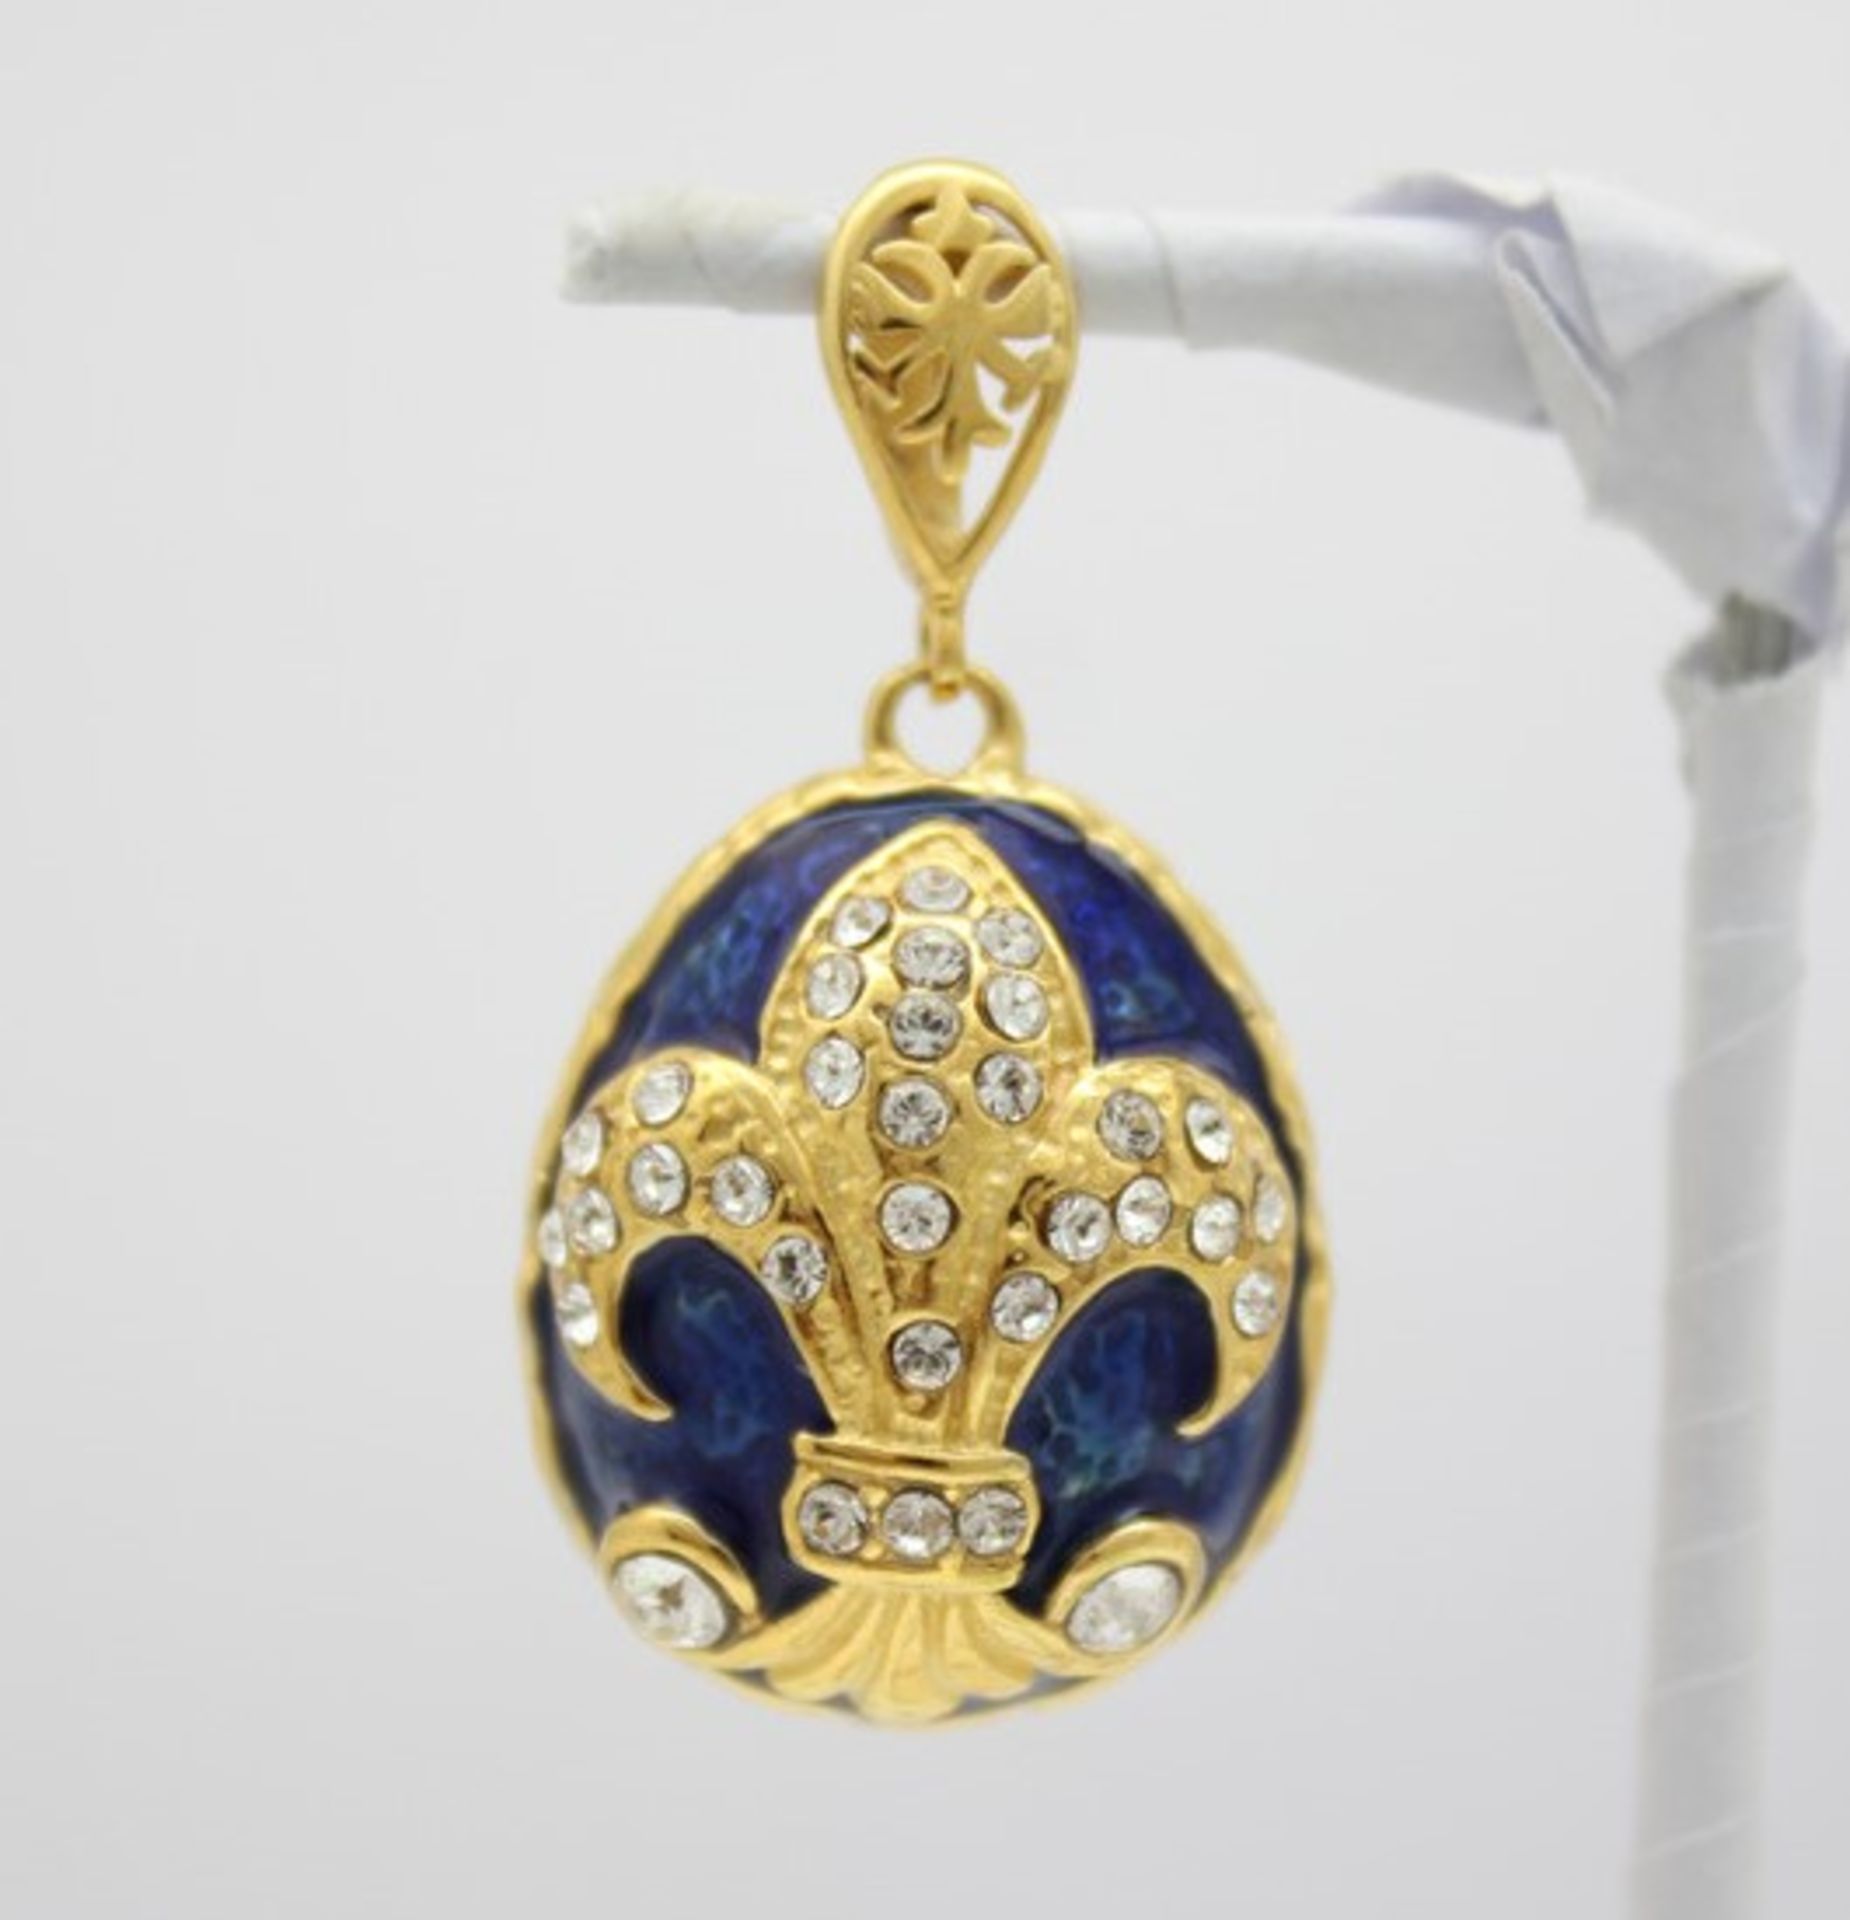 Blaues Ei mit französischer Lilie. Kettenanhänger in russischem Faberge-Stil. 925 Sterling Silber,